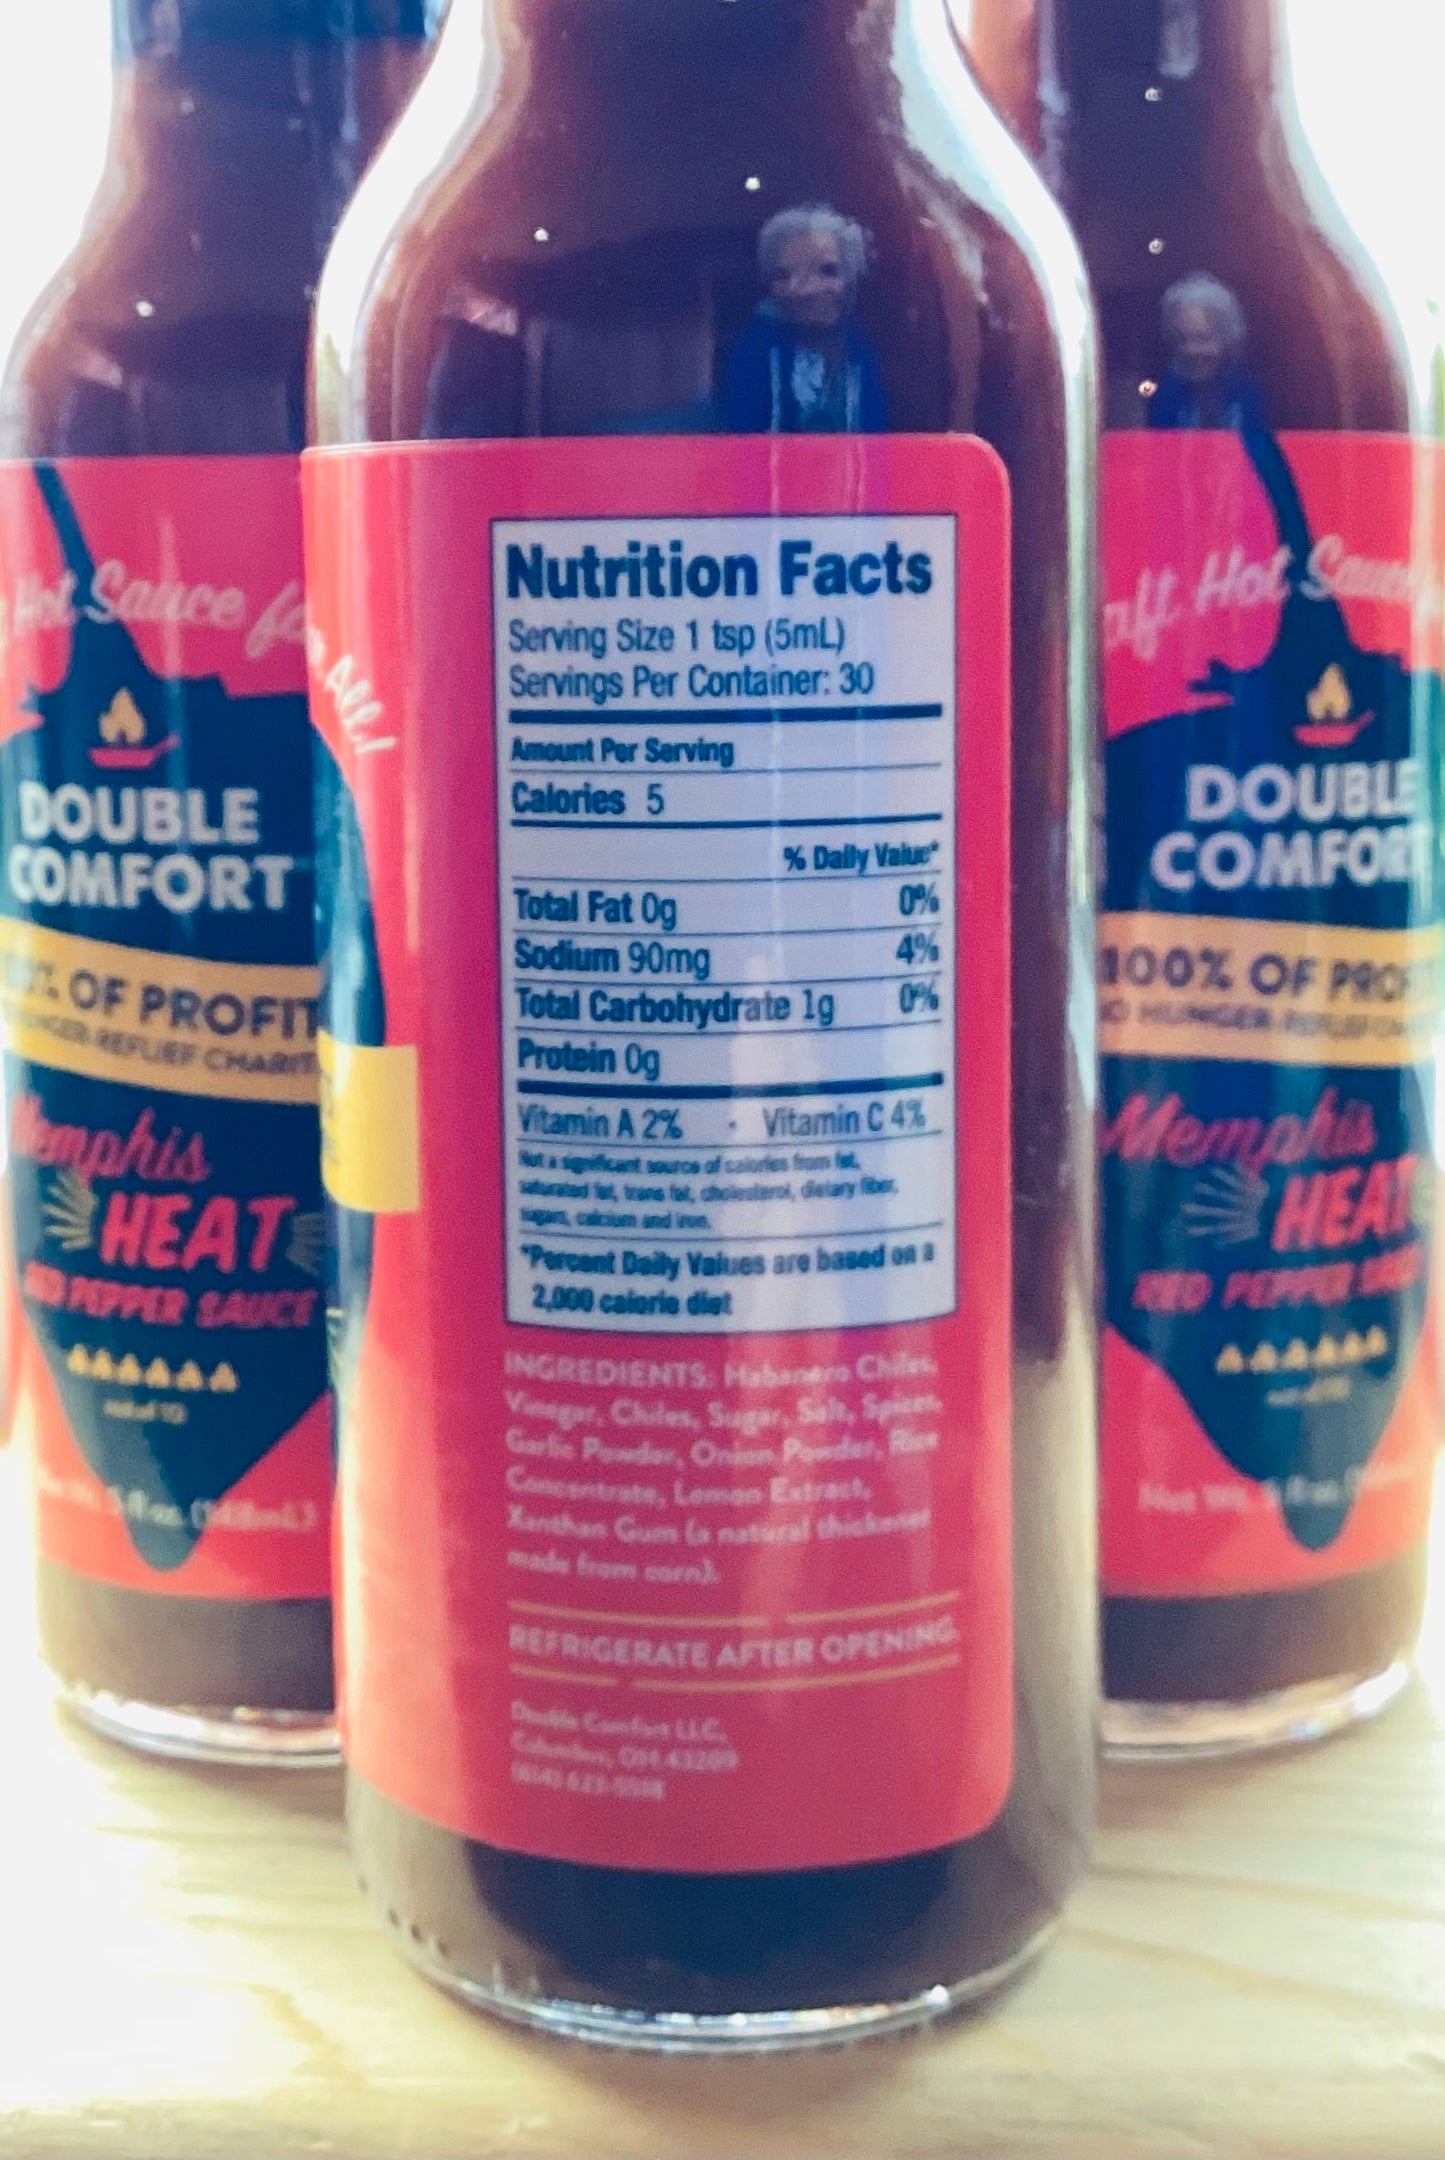 Double Comfort Memphis Heat Red Pepper Sauce